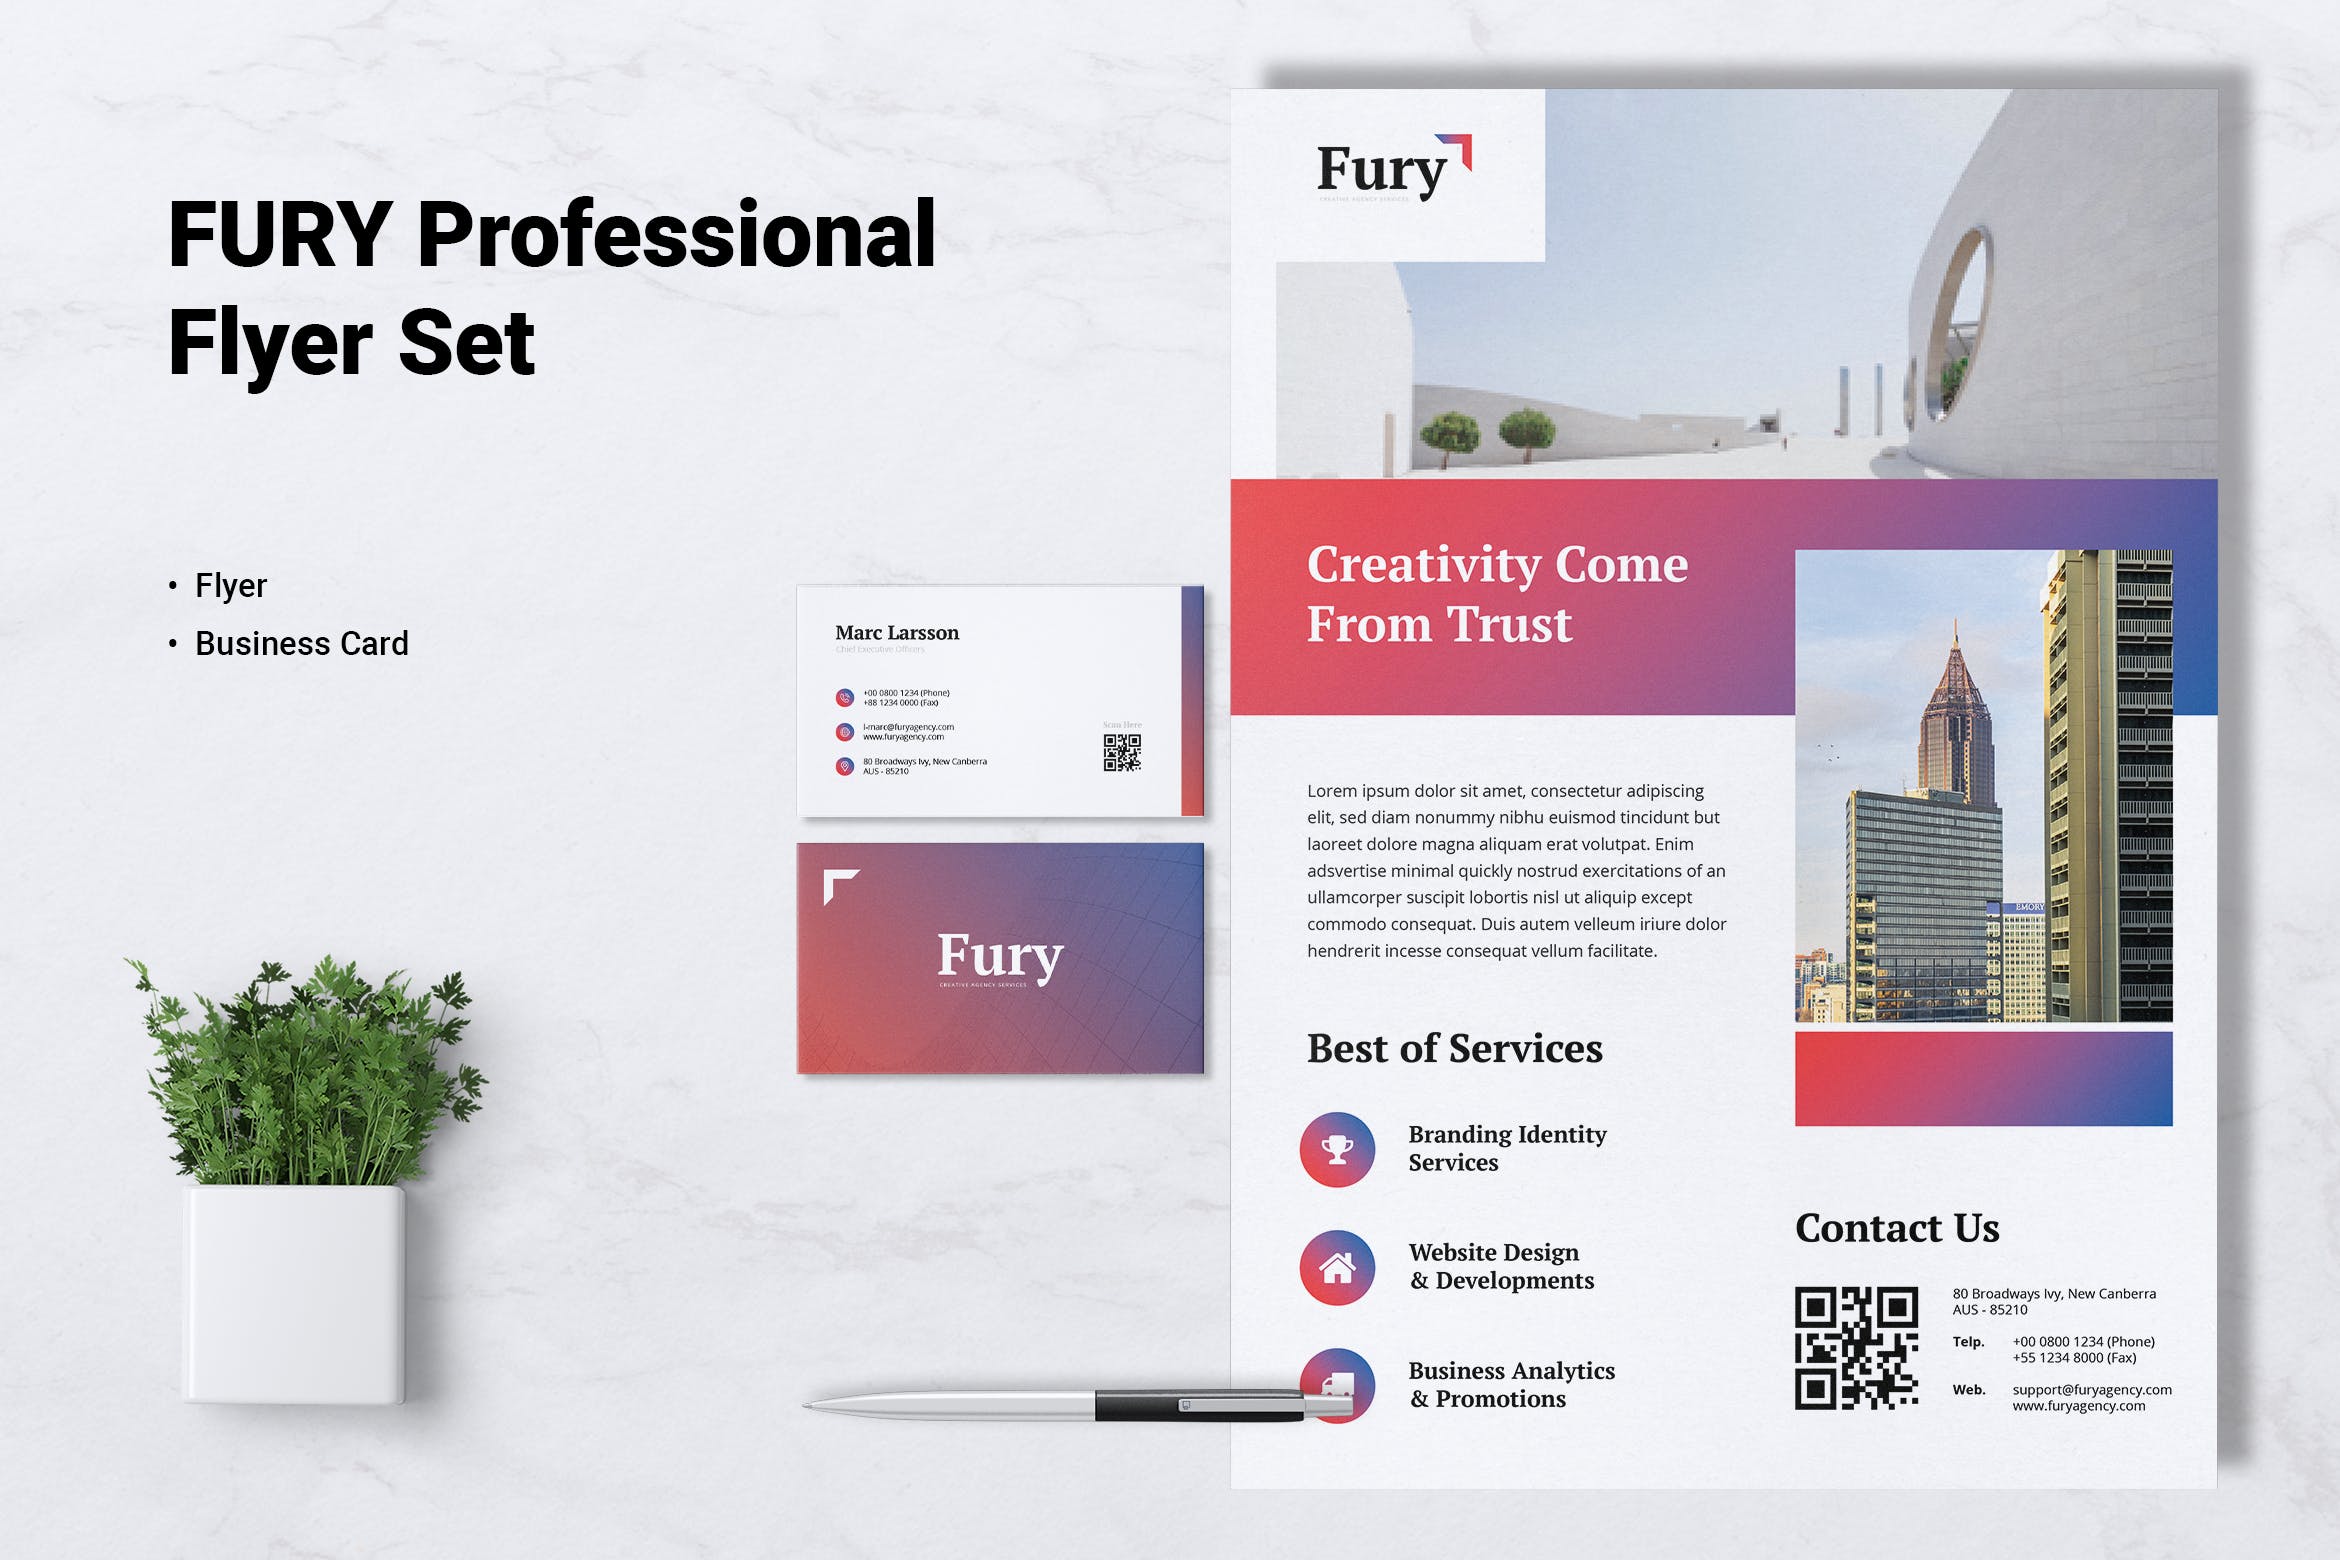 创意代理公司宣传单&企业名片设计模板 FURY Creative Agency Flyer & Business Card插图